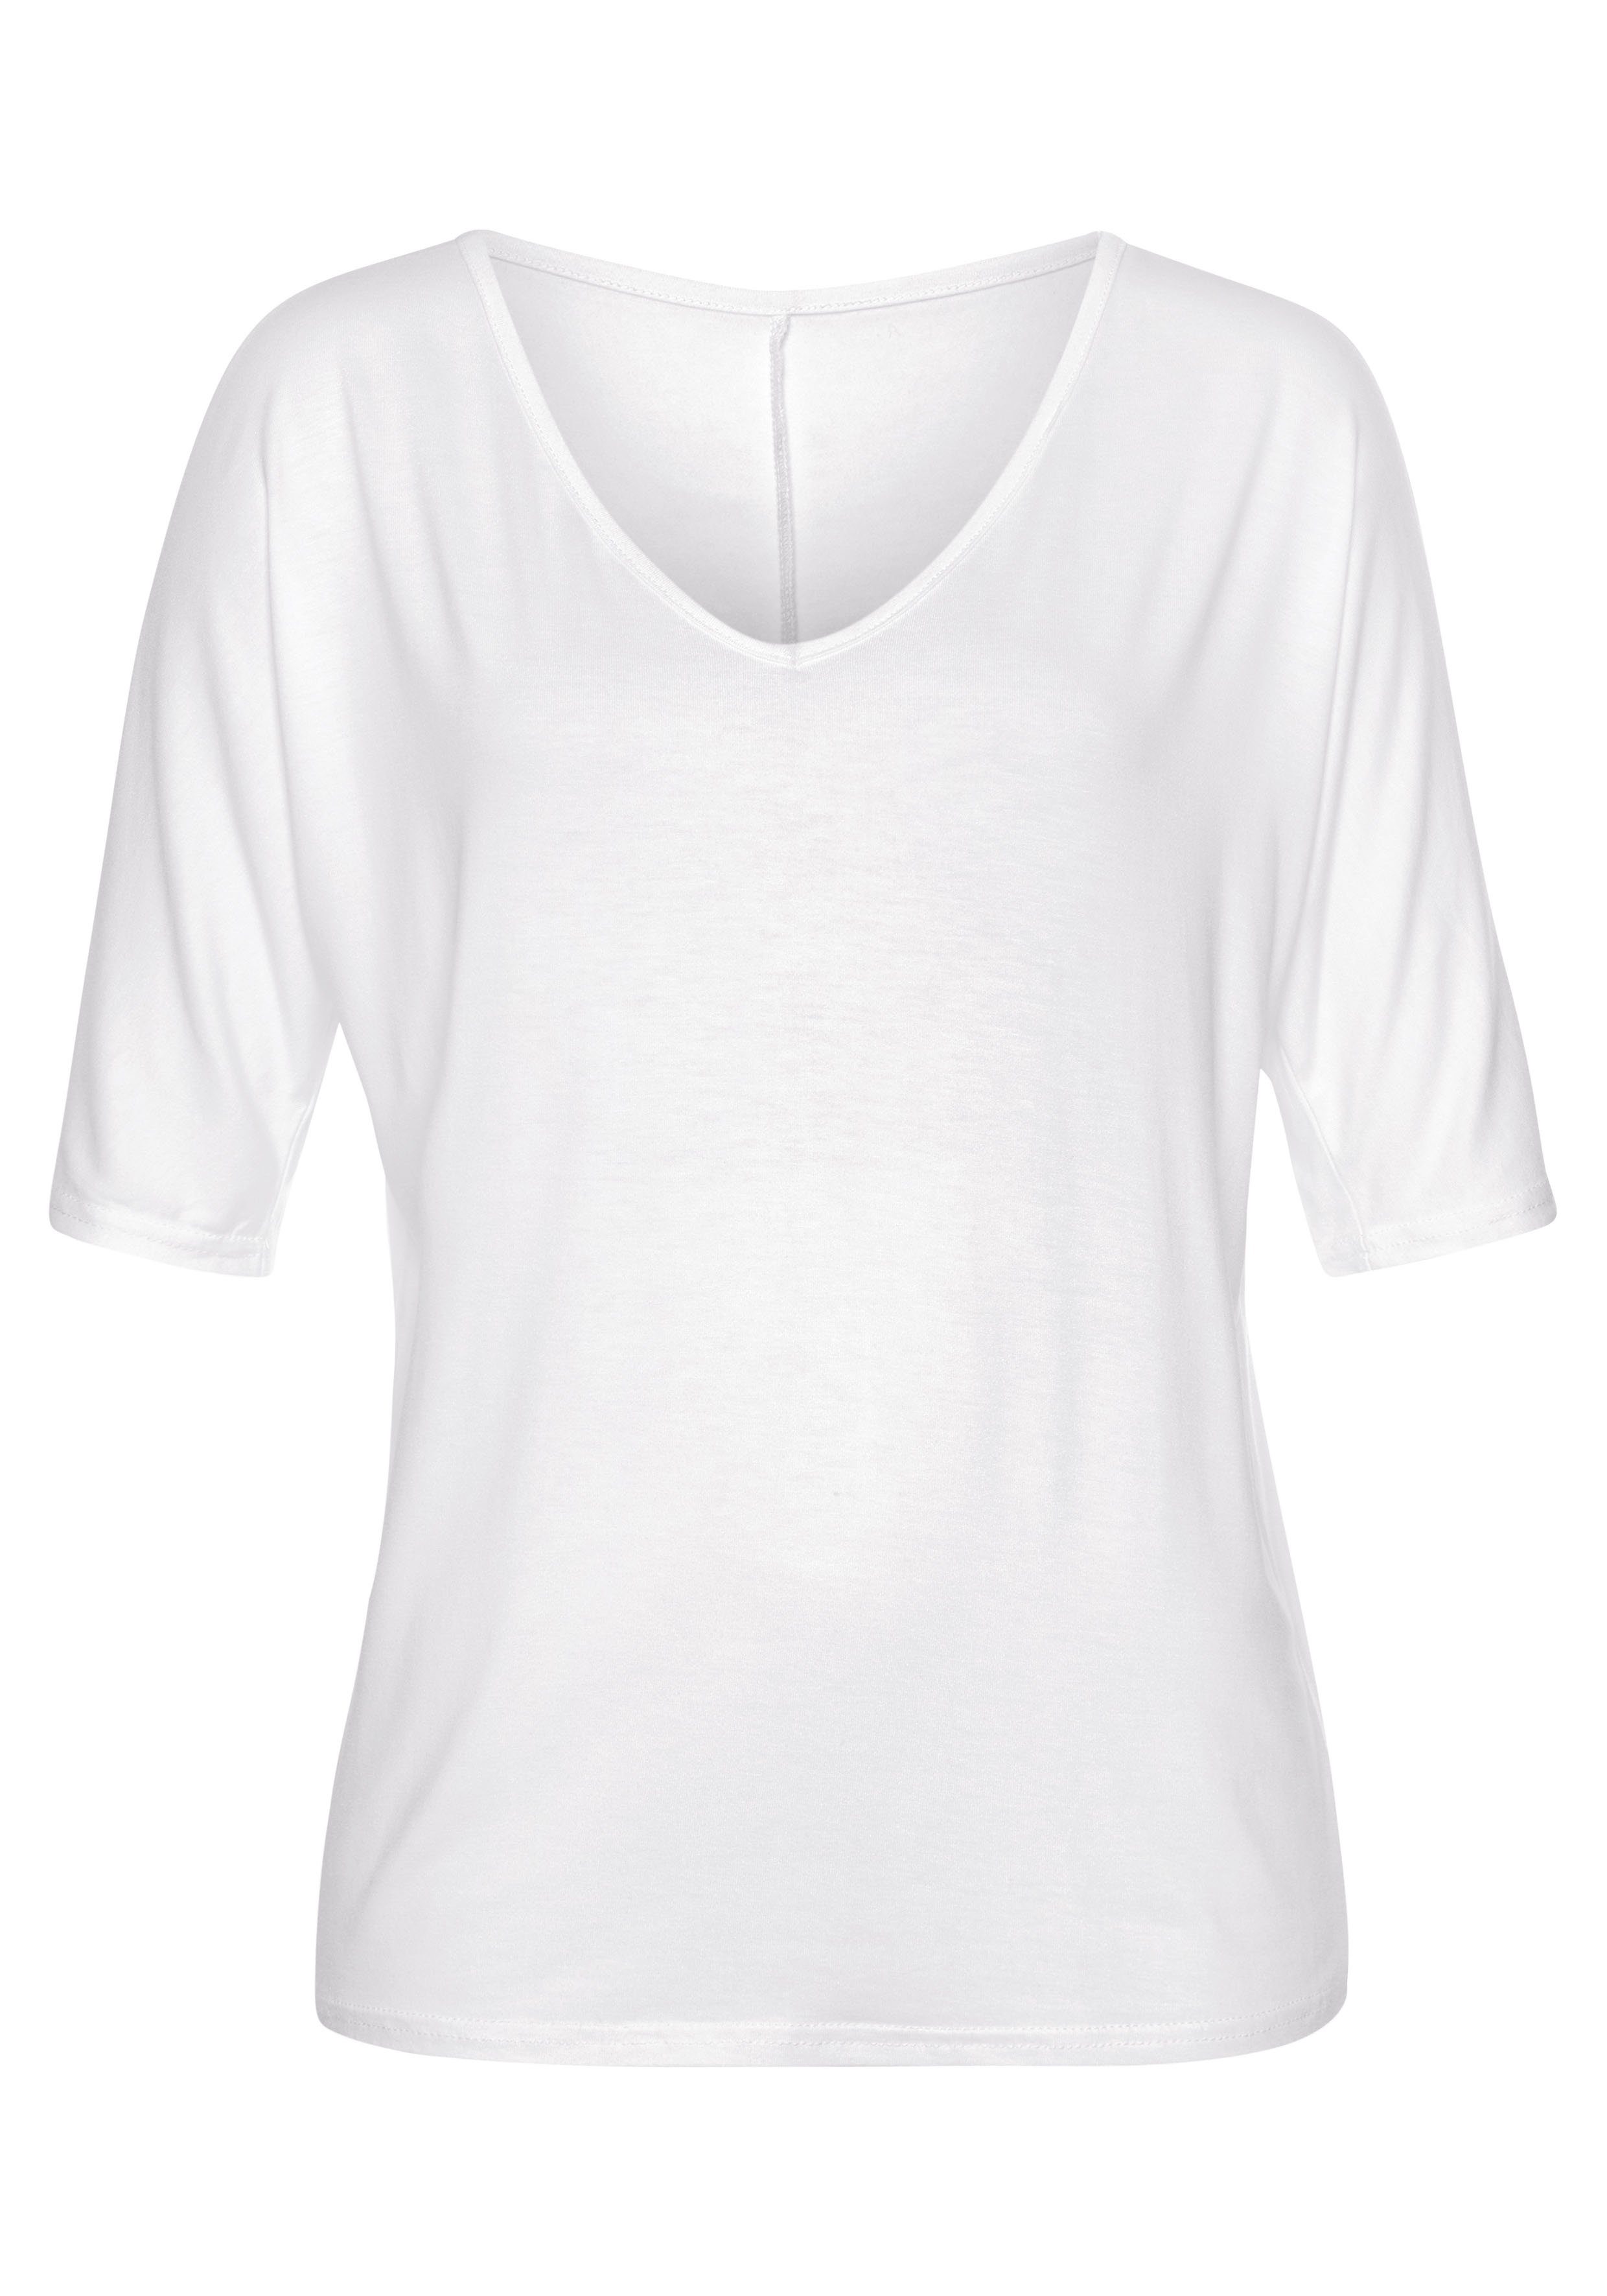 Vivance T-Shirt Ärmel mit Cut-outs an weiß